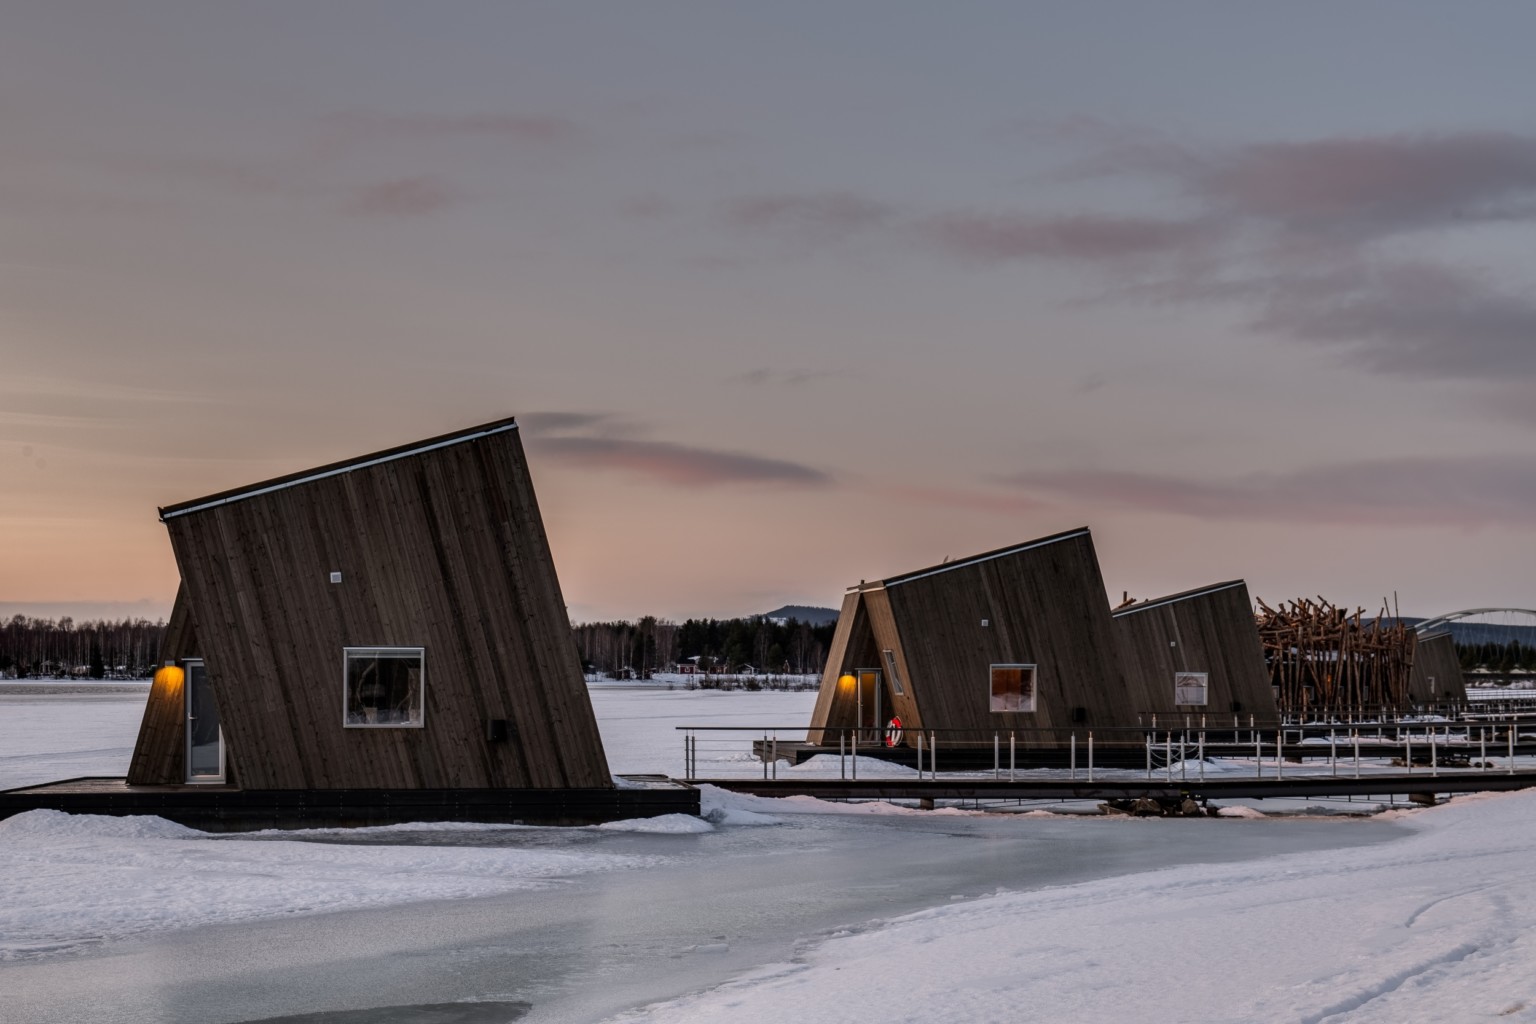 حمام، قطبی، حمام قطبی، معماری هتل در سوئد، معماری هتل قطبی